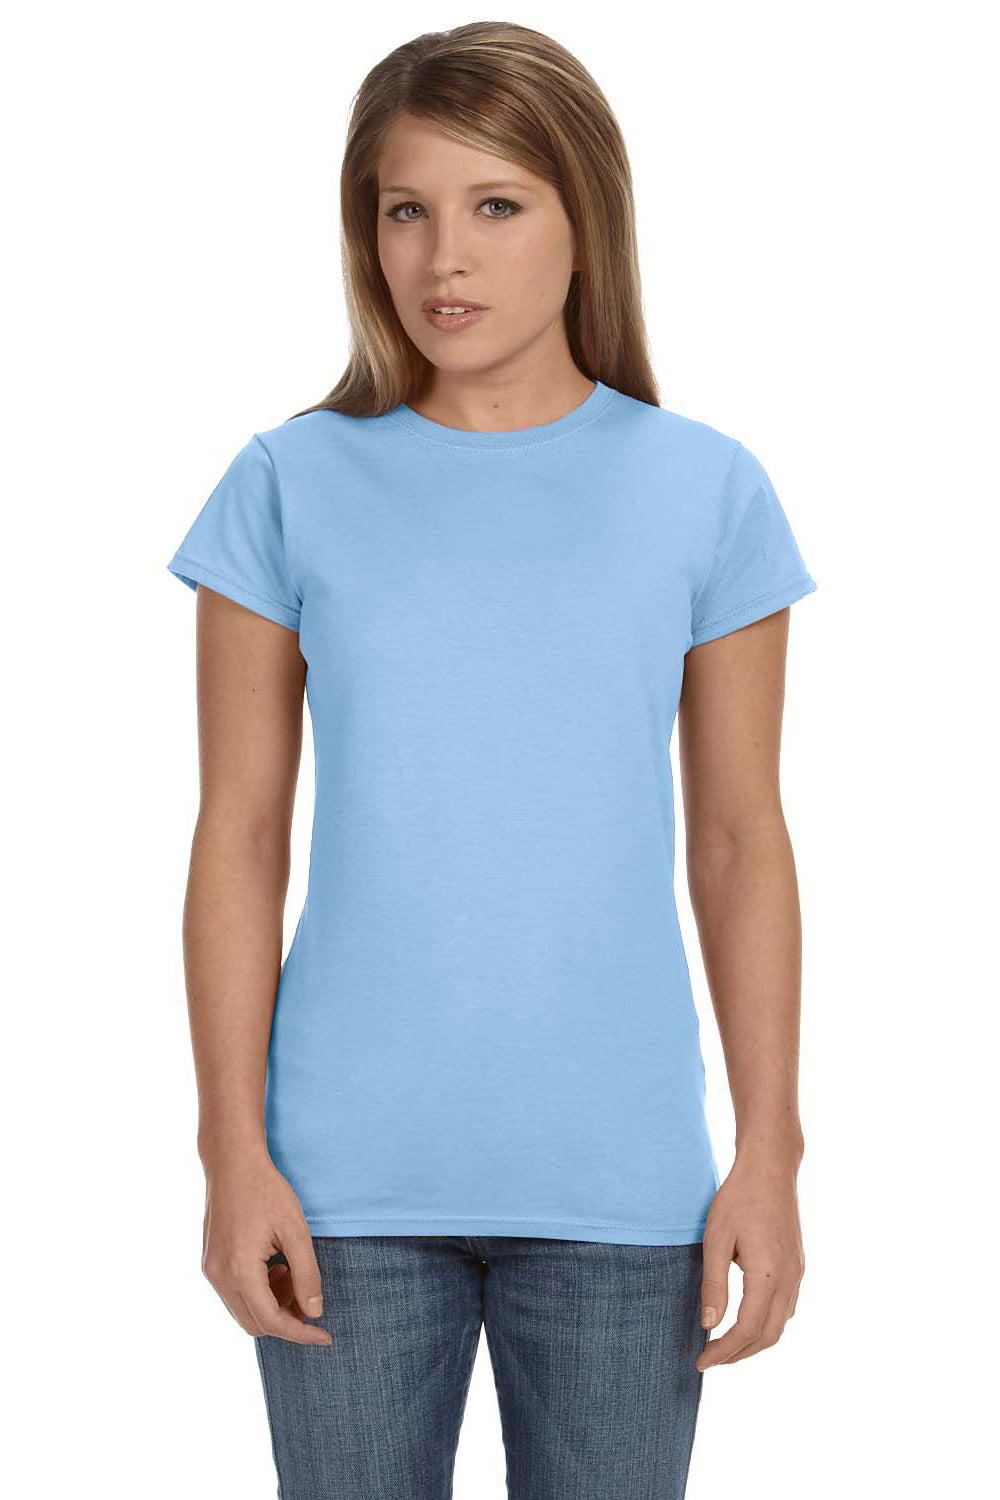 Gildan G640L Womens Softstyle Short Sleeve Crewneck T-Shirt Light Blue Front